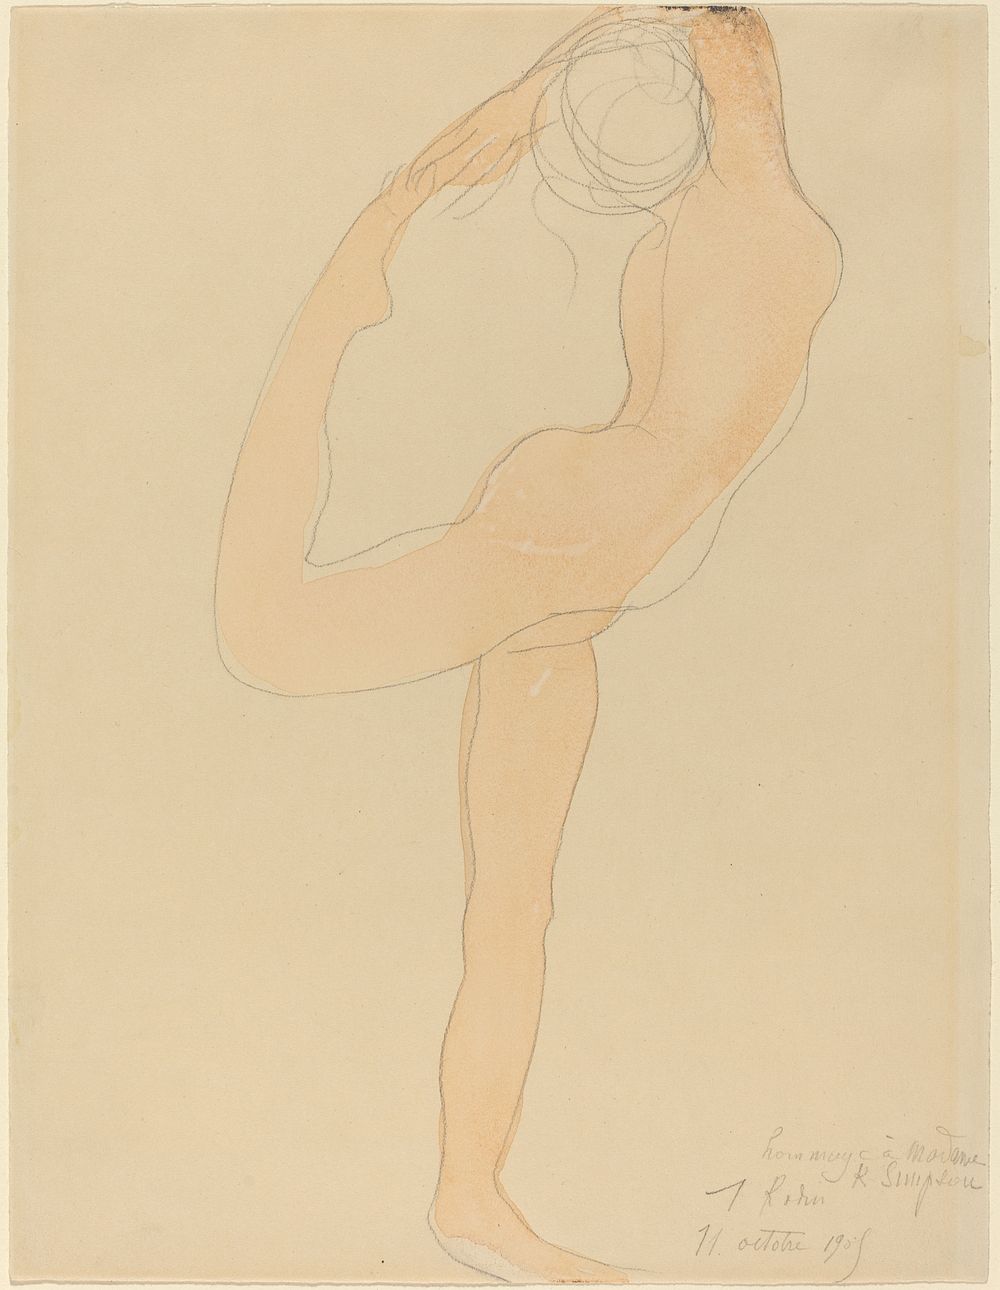 Dancing Figure (1905) by Auguste Rodin. 